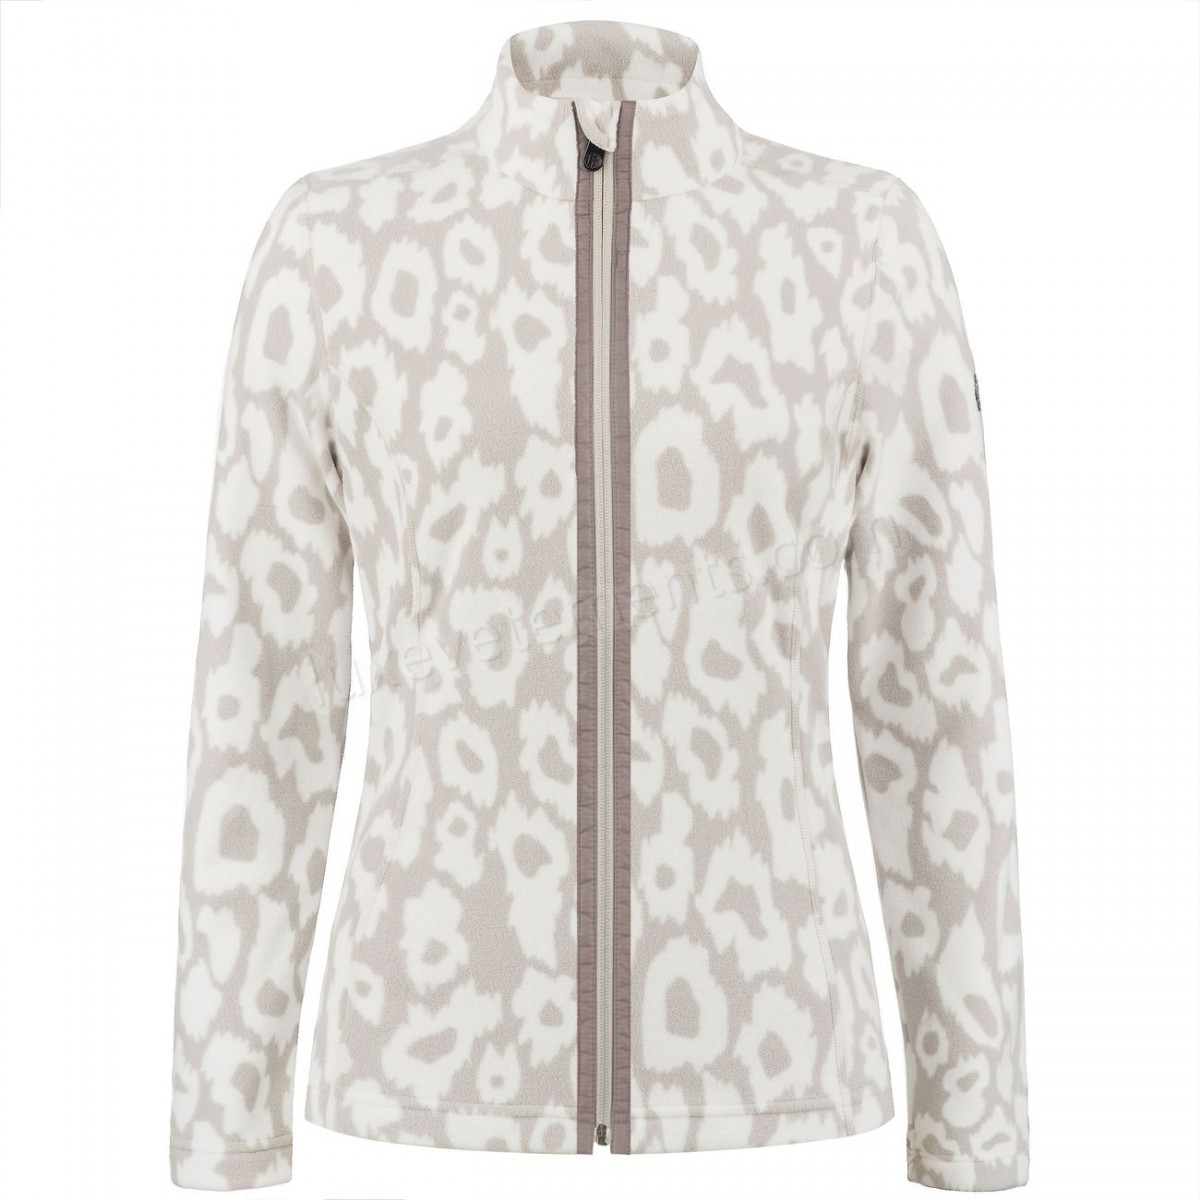 Poivre Blanc-Sports d'hiver femme POIVRE BLANC Veste Polaire Poivre Blanc Fleece Jacket 1500 Panther Grey Femme Vente en ligne - -3